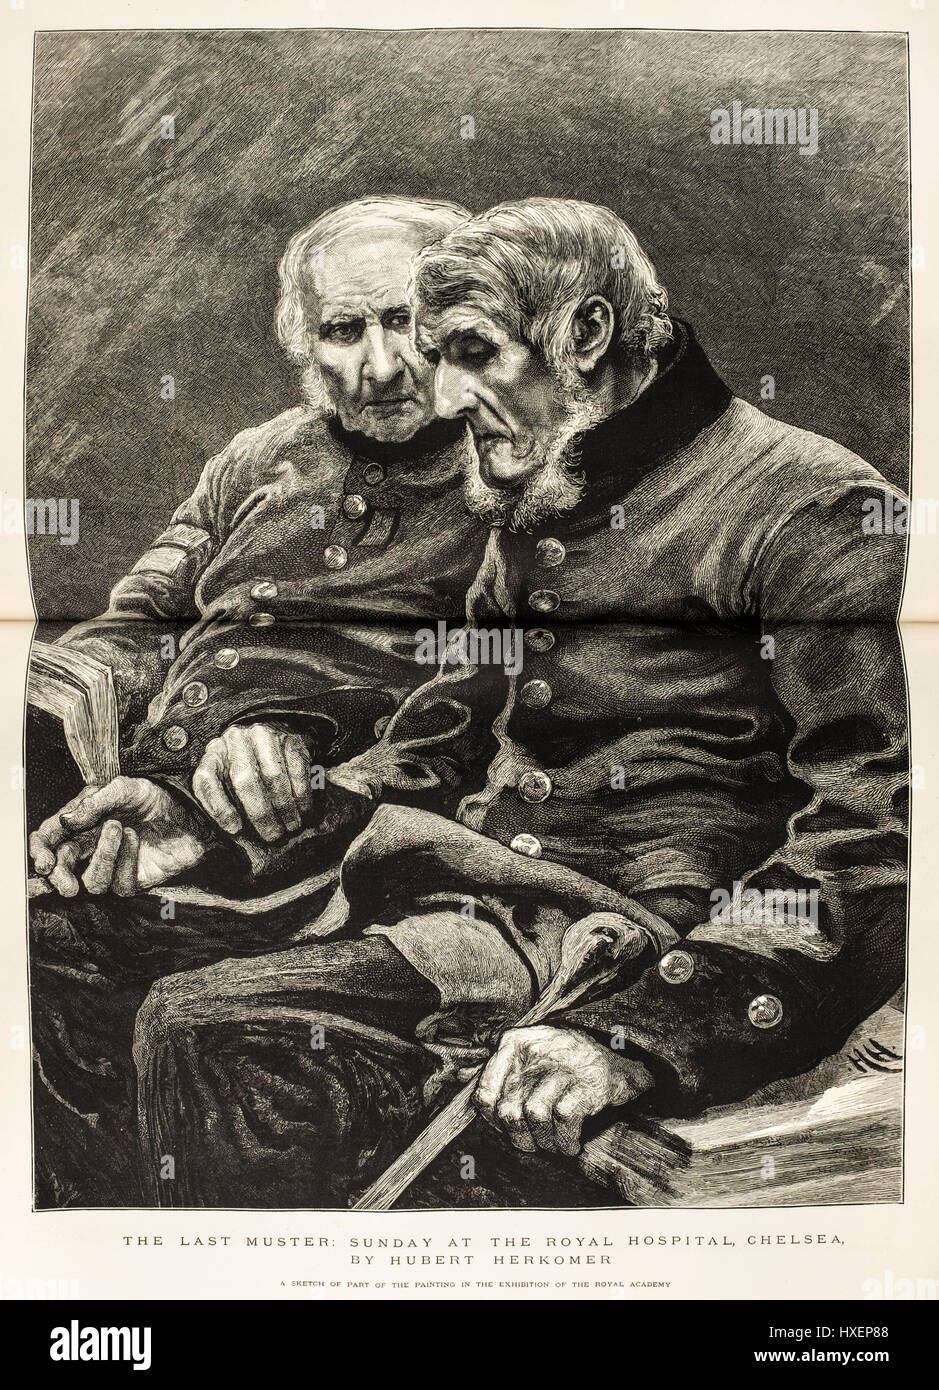 A doppia pagina illustrazione da 'La grafica' quotidiano (1874) intitolata "L'ultimo Muster: domenica presso il Royal Hospital Chelsea' da Hubert Herkomer Foto Stock